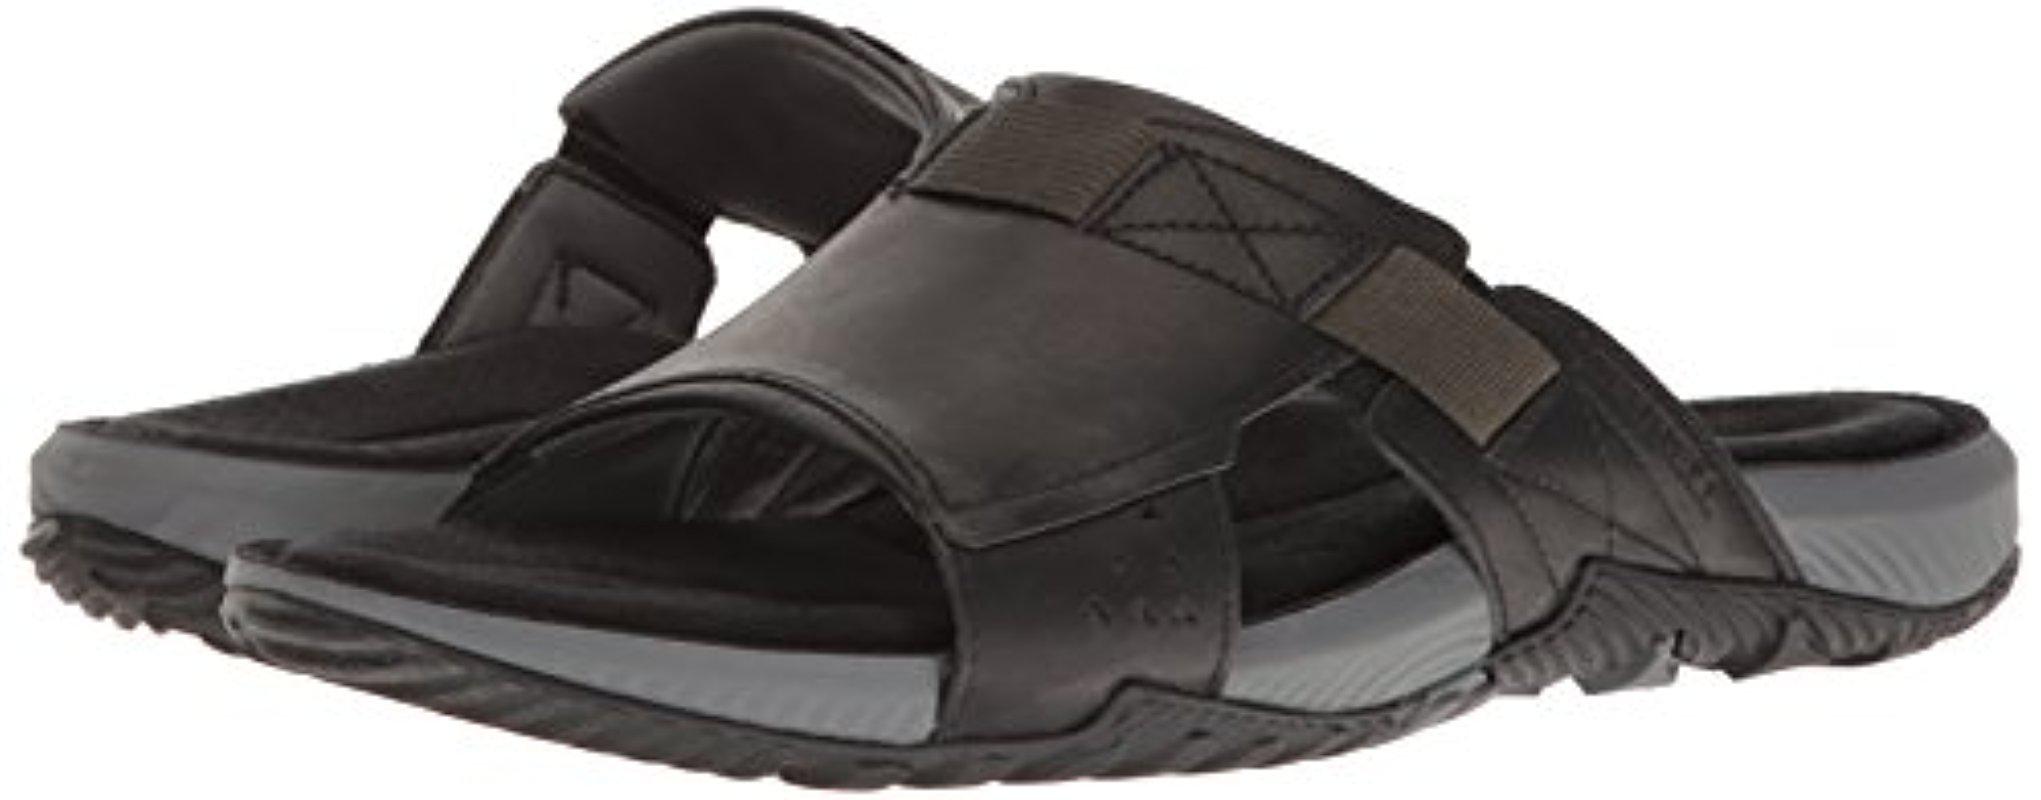 Merrell Leather Terrant Slide Open Toe Sandals in Black for Men - Lyst